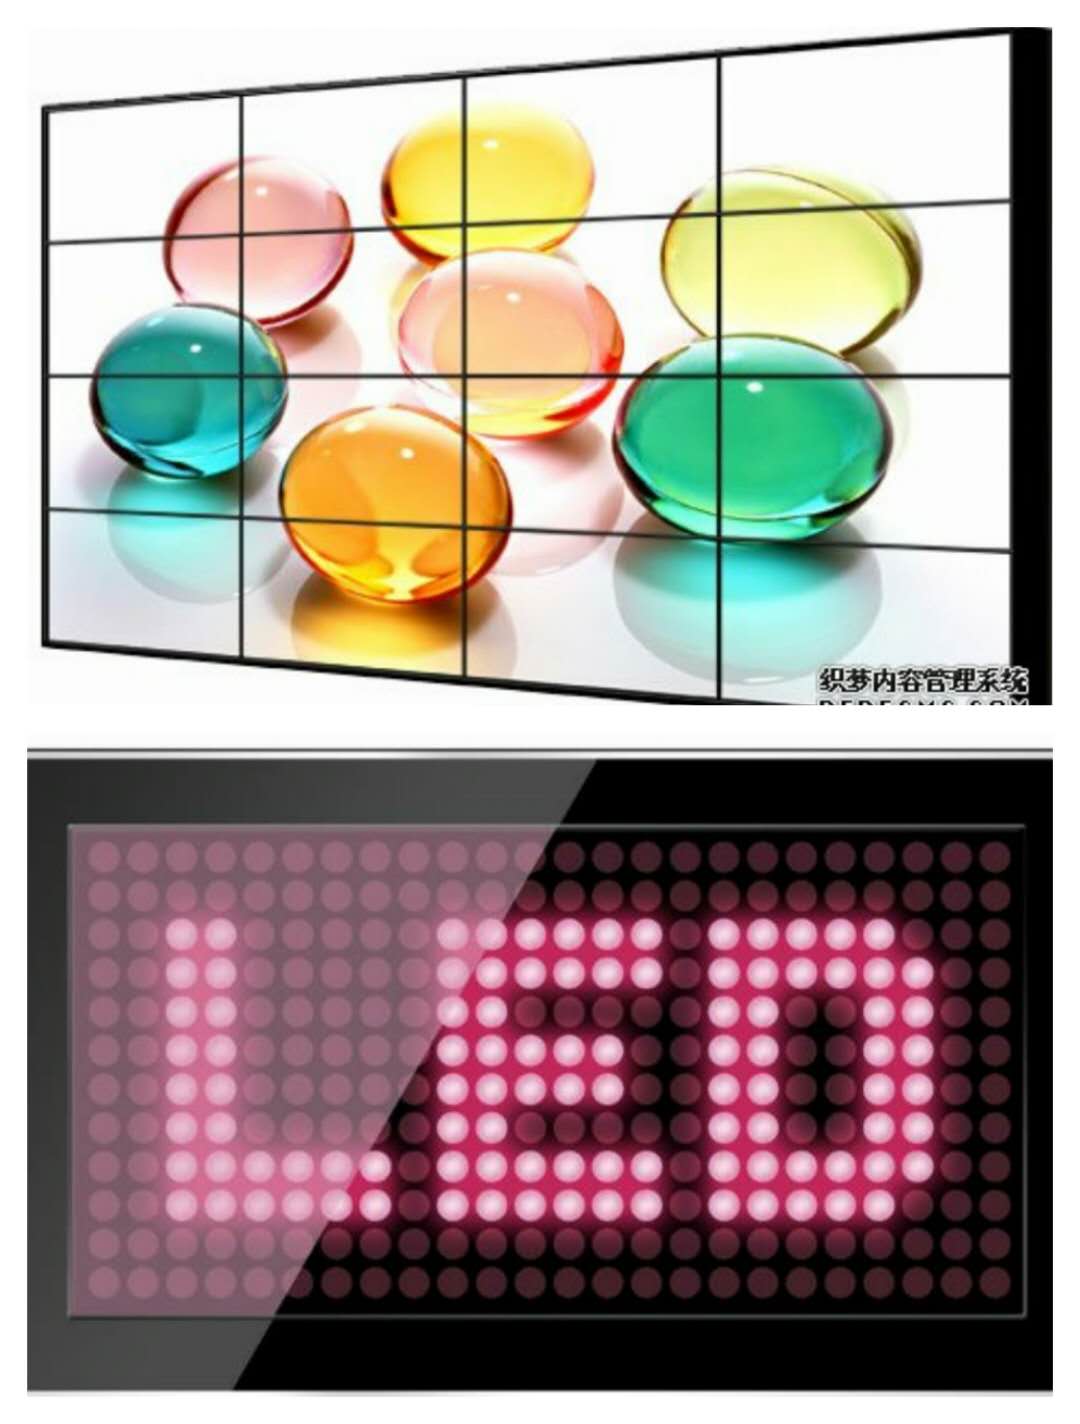  LED显示屏和液晶拼接显示屏的区别 